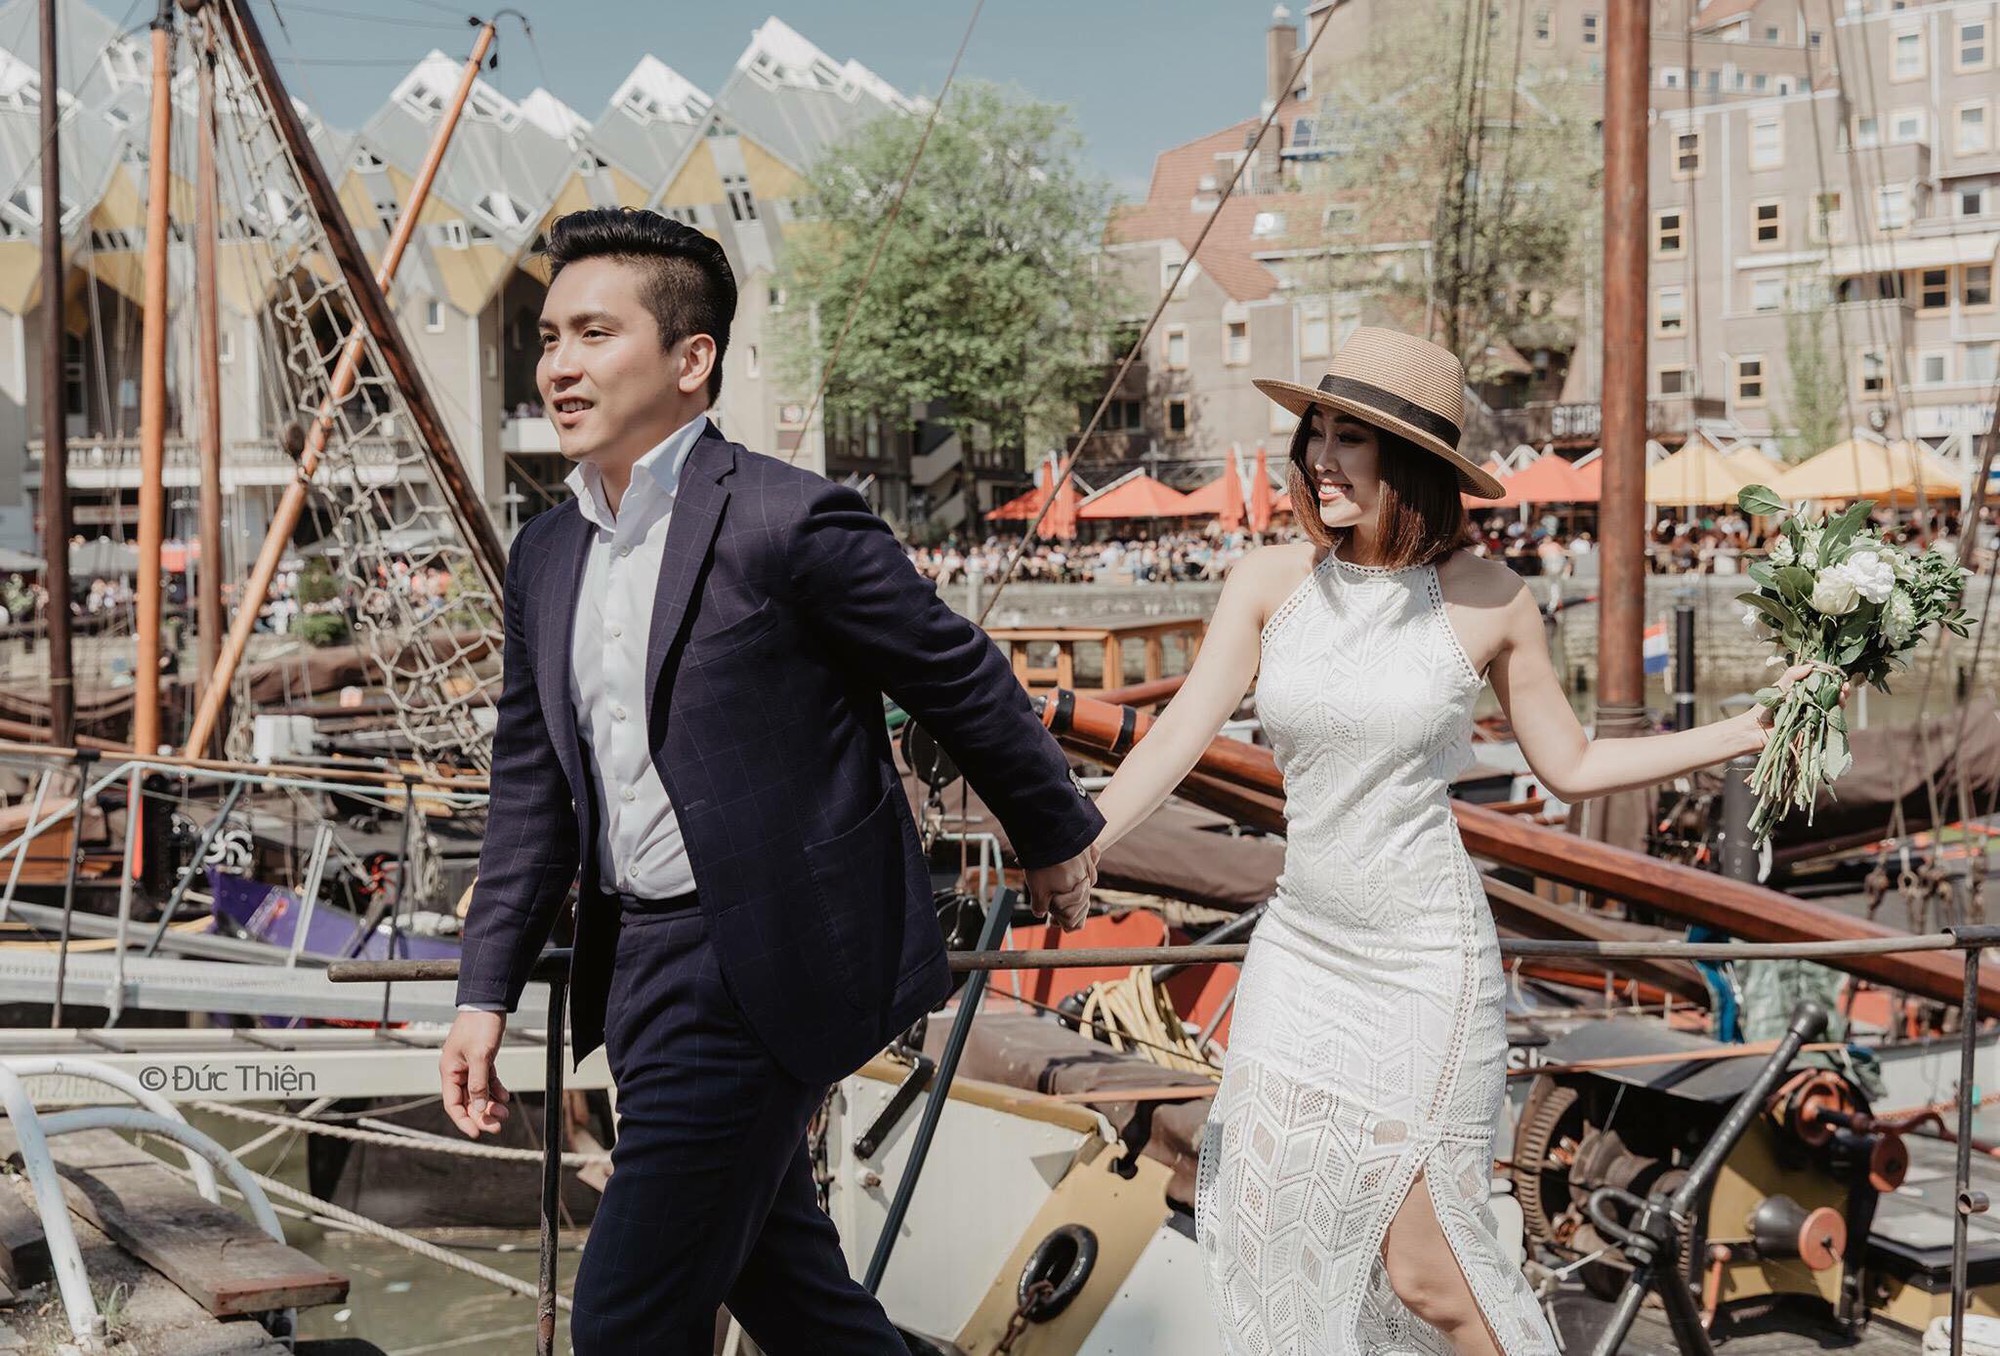 Thông tin ít ỏi về chồng sắp cưới MC Liêu Hà Trinh: Doanh nhân thành đạt trong lĩnh vực đầu tư ẩm thực tại Hà Lan - Ảnh 1.